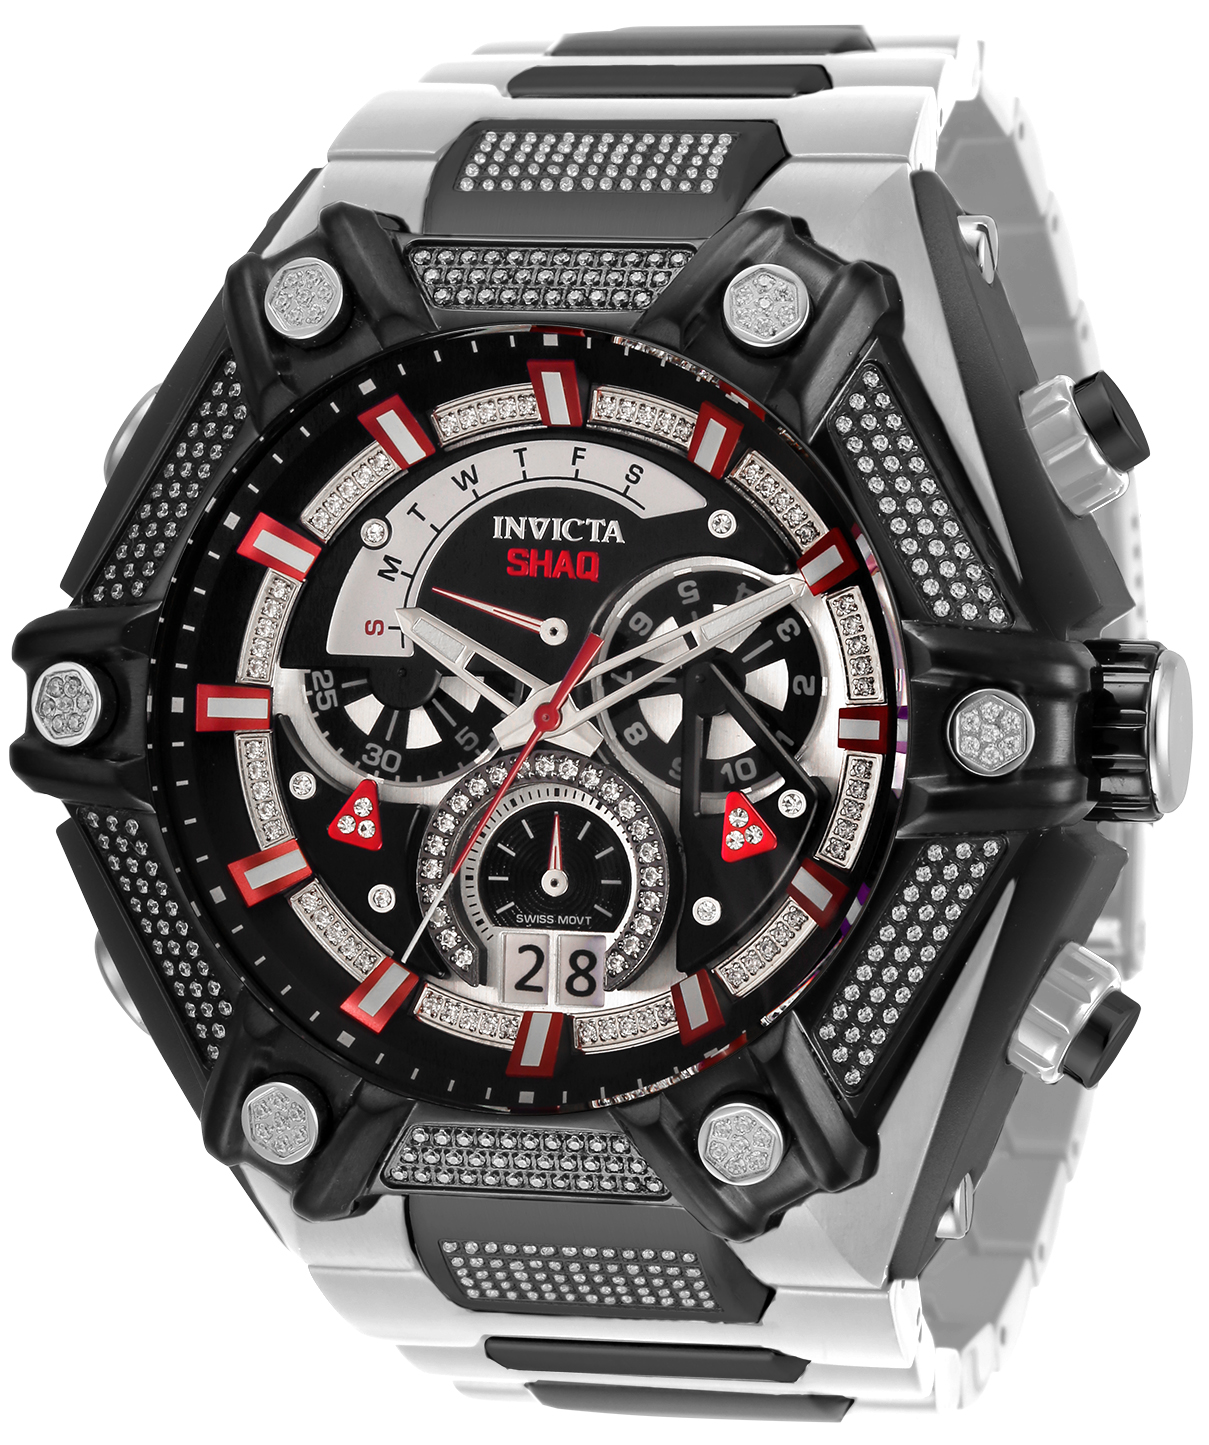 Invicta SHAQ 0.4 Carat Diamond Men's Watch - 60mm, Steel, Black (33685)